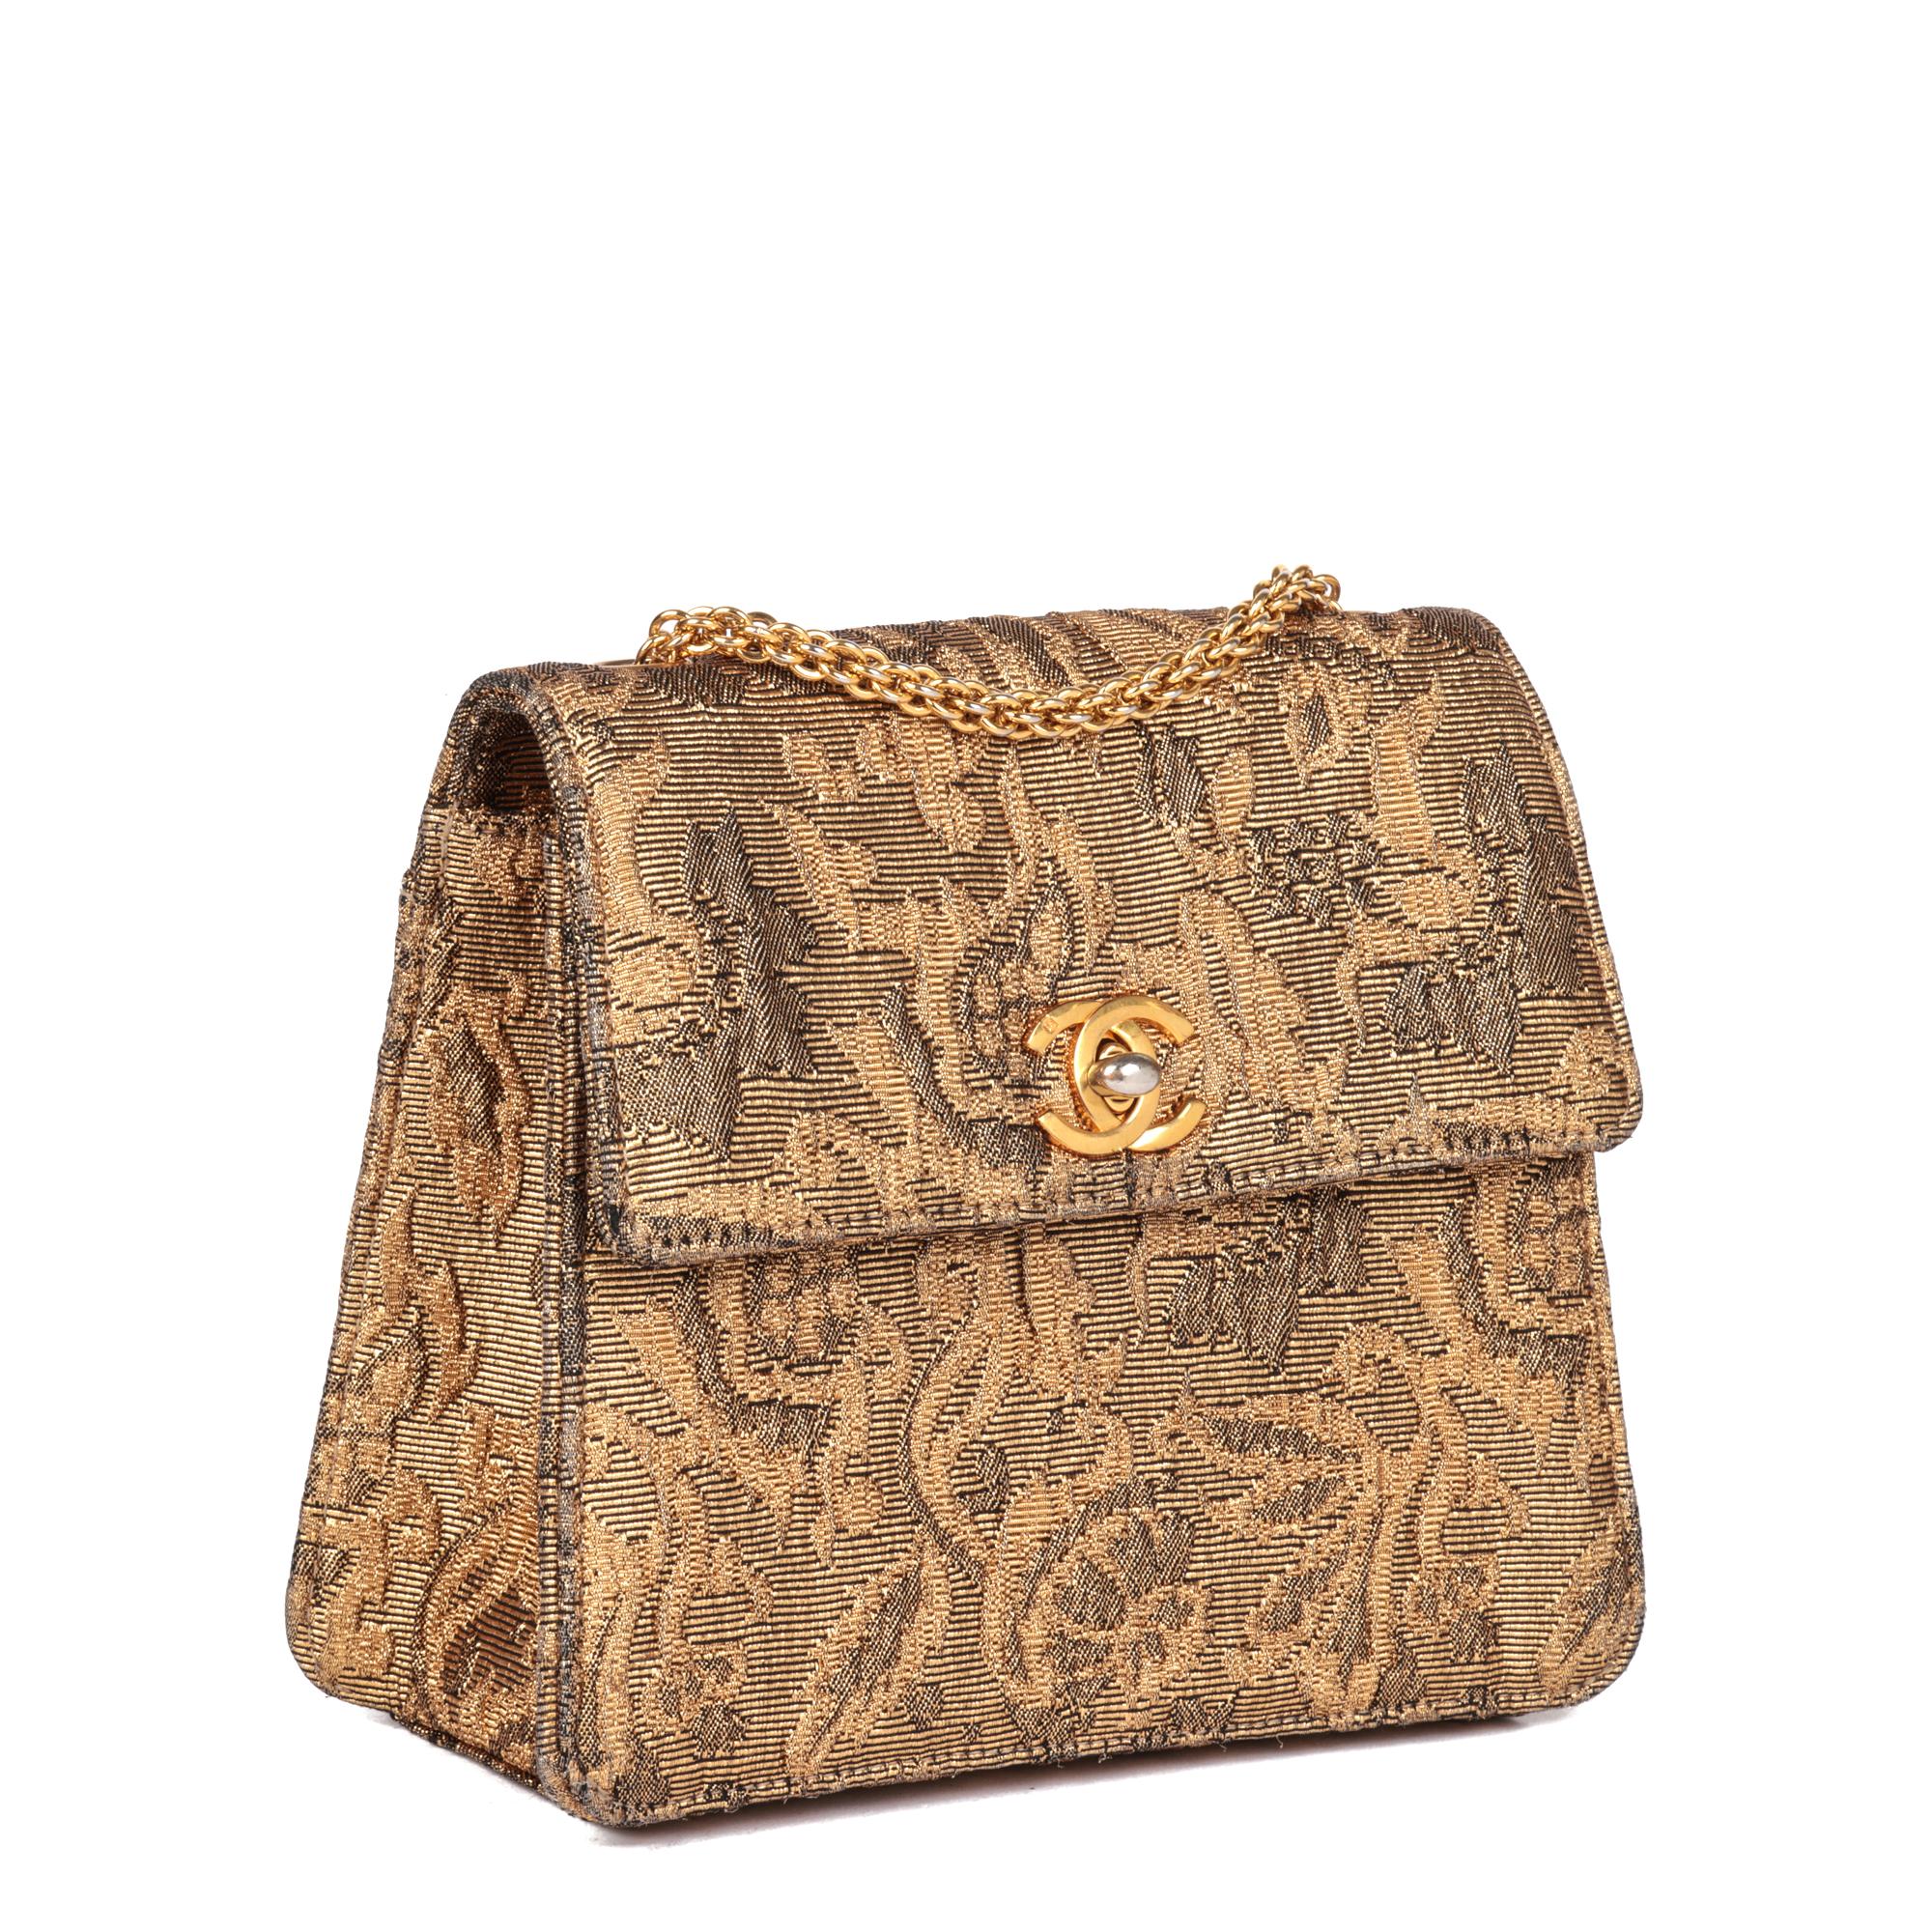 CHANEL
Gold Metallic Floral Woven Jacquard Vintage Mini Flap Bag

Seriennummer: 5146600
Alter (CIRCA): 1997
Begleitet von: Chanel Staubbeutel, Echtheitskarte, Pflegebroschüre
Details zur Authentizität: Echtheitskarte, Serienaufkleber (Made in